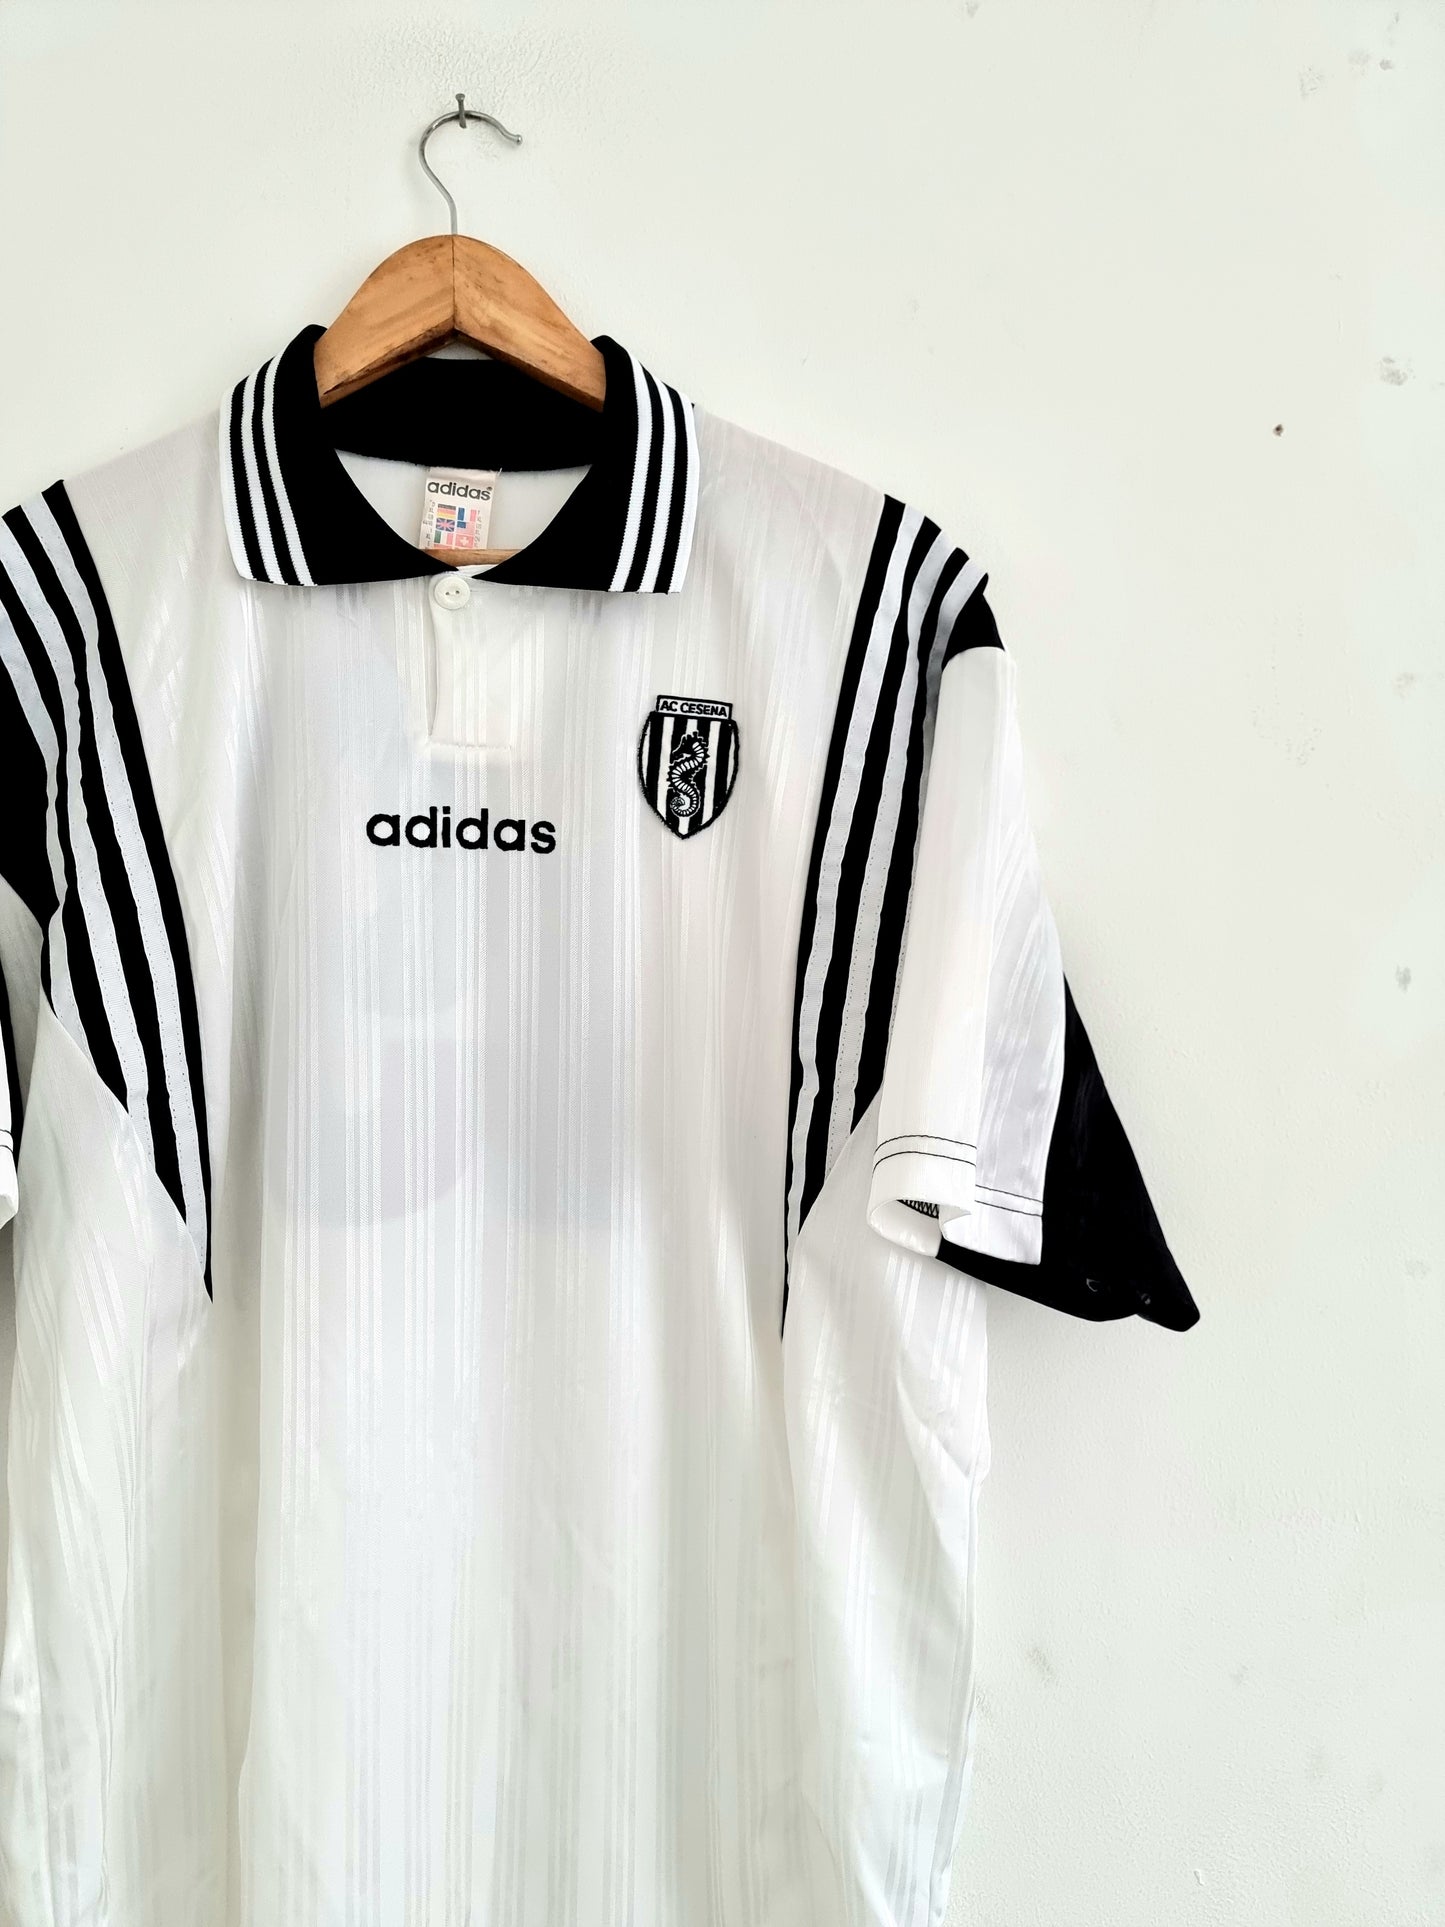 Adidas AC Cesena 96/98 Home Shirt XL